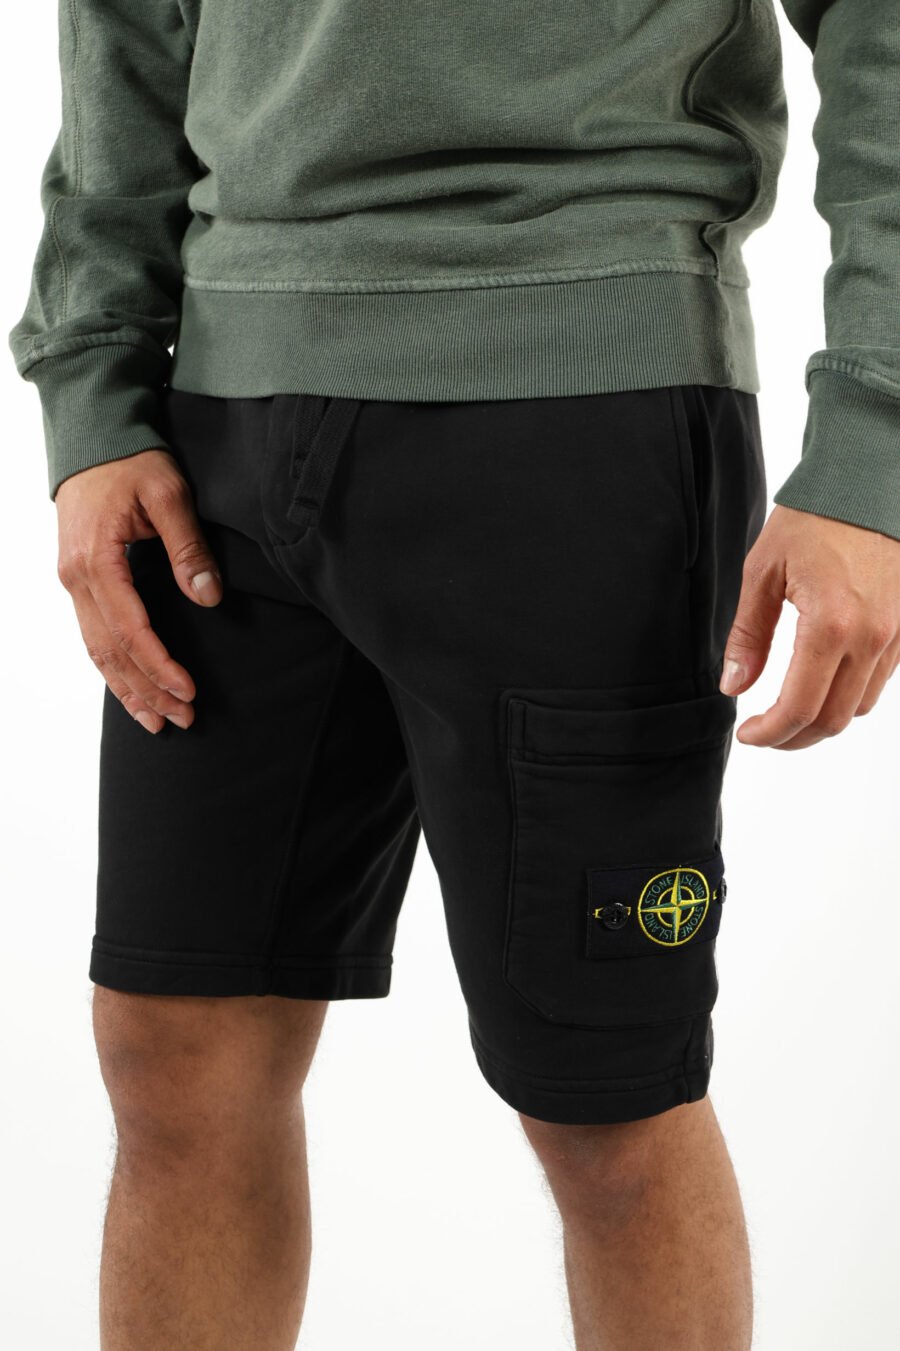 Pantalón de chándal corto negro con logo parche brújula - 111396